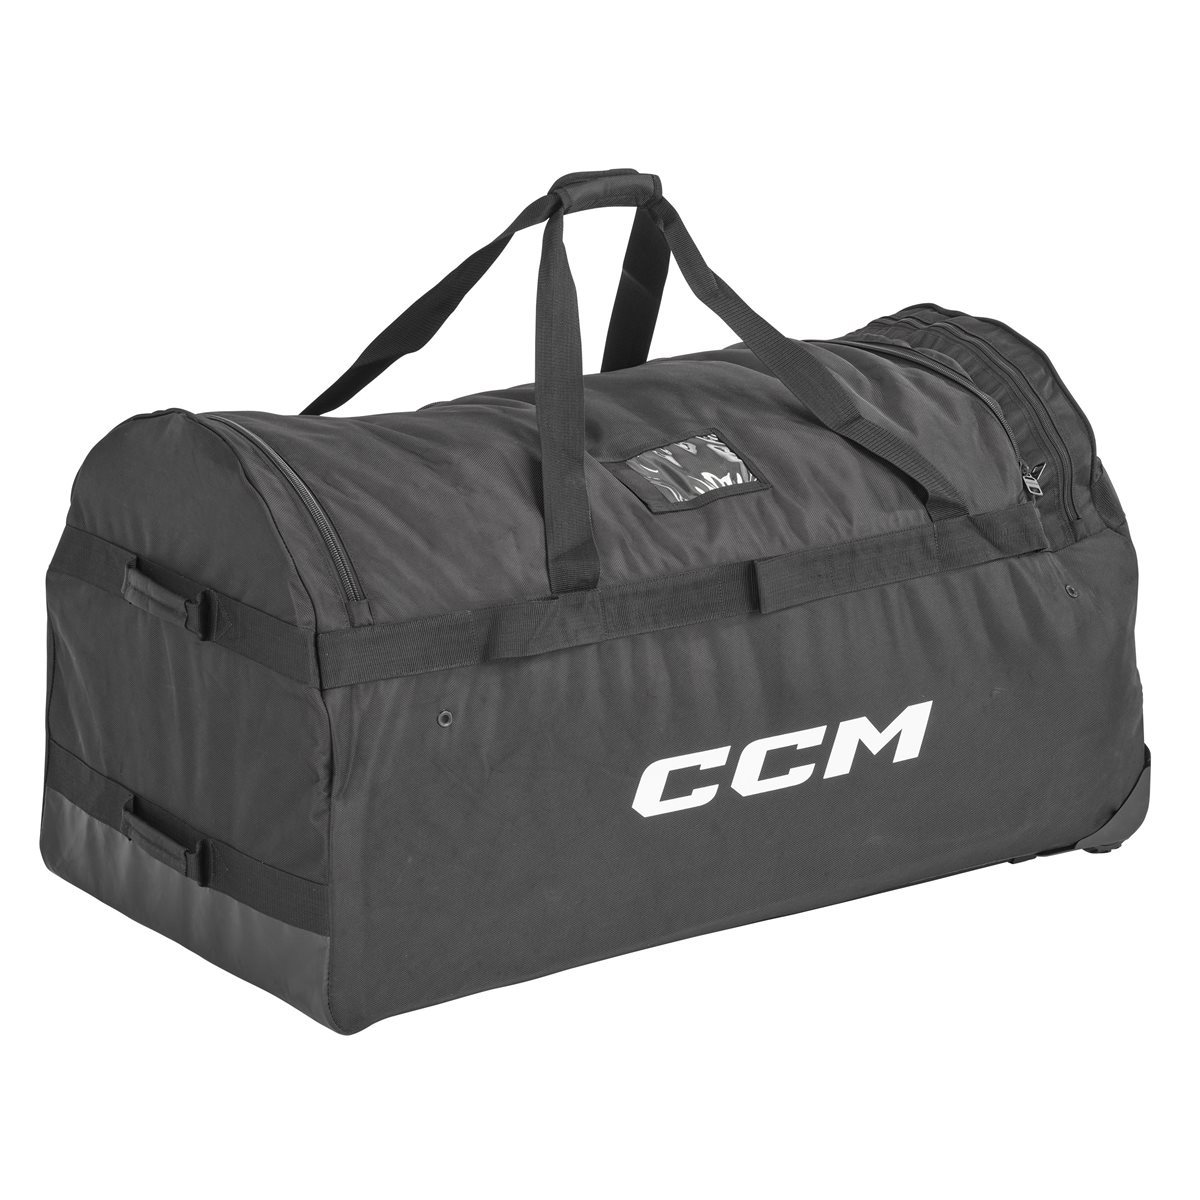 CCM Brankárska taška CCM Pro Wheeled Bag